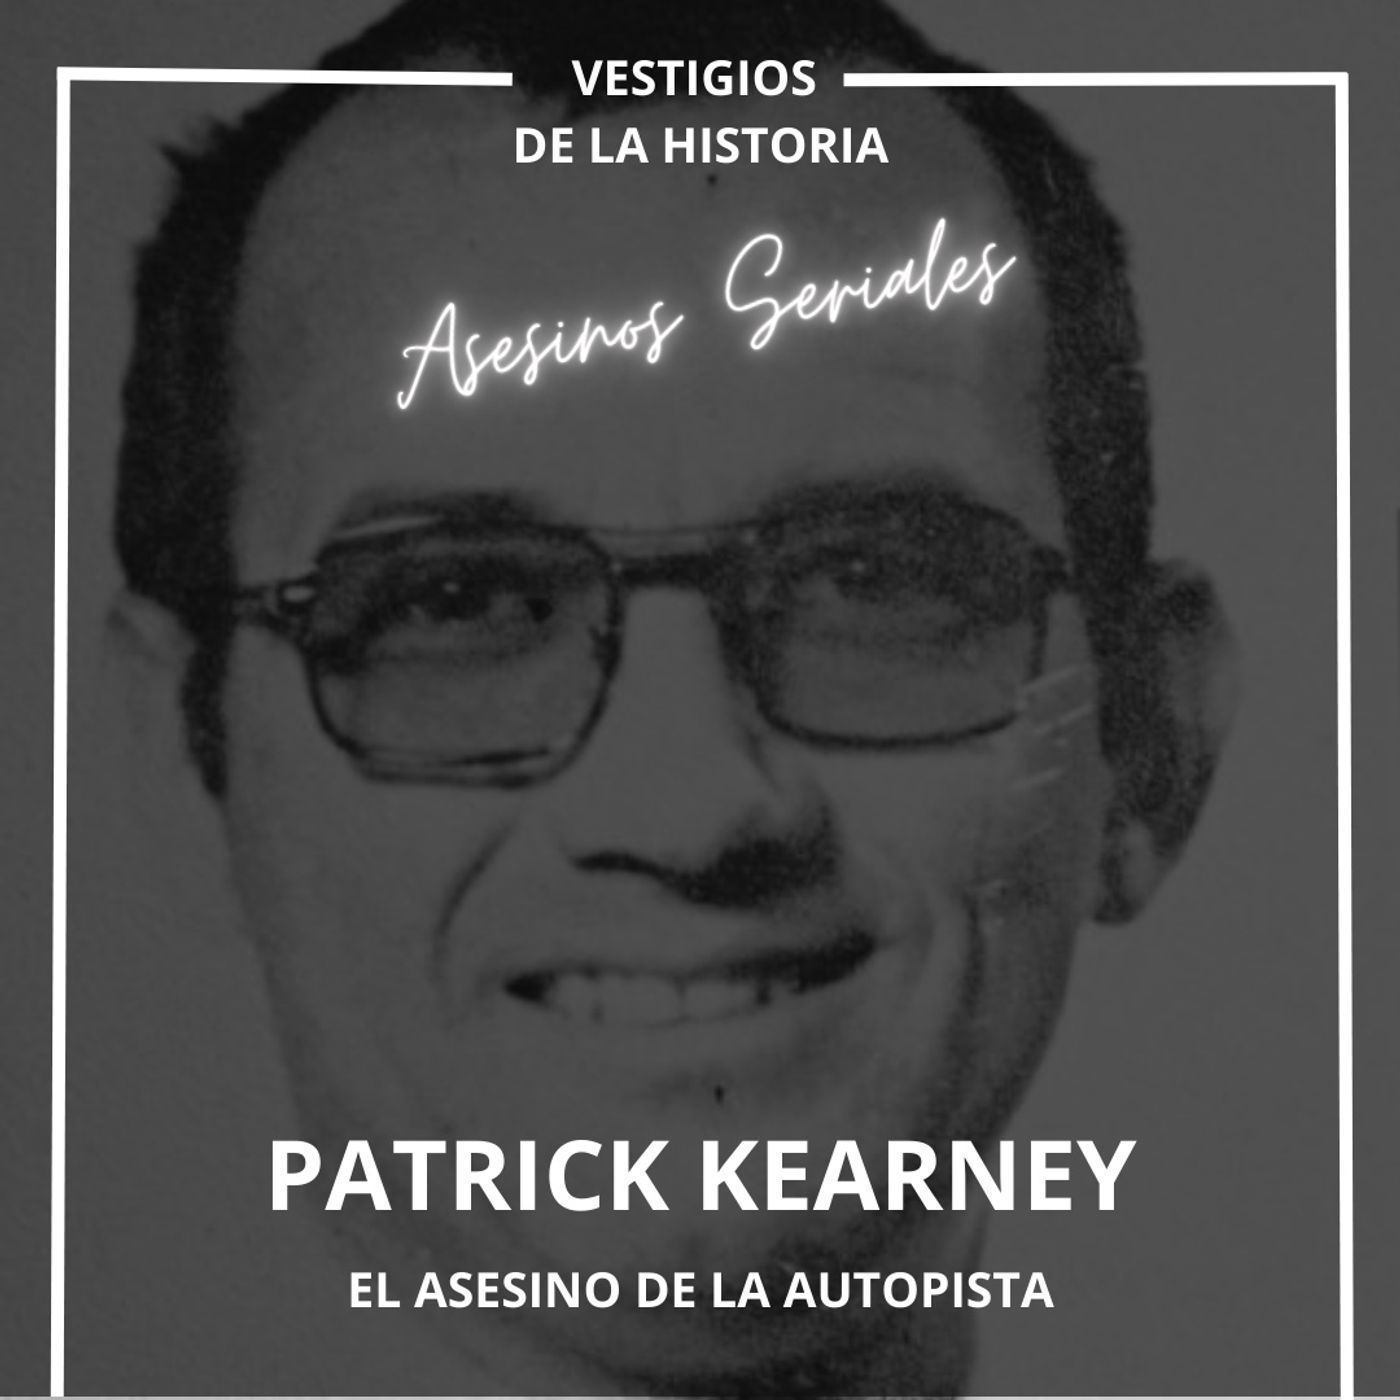 Asesinos seriales: Patrick Kearney: El Asesino de la Autopista